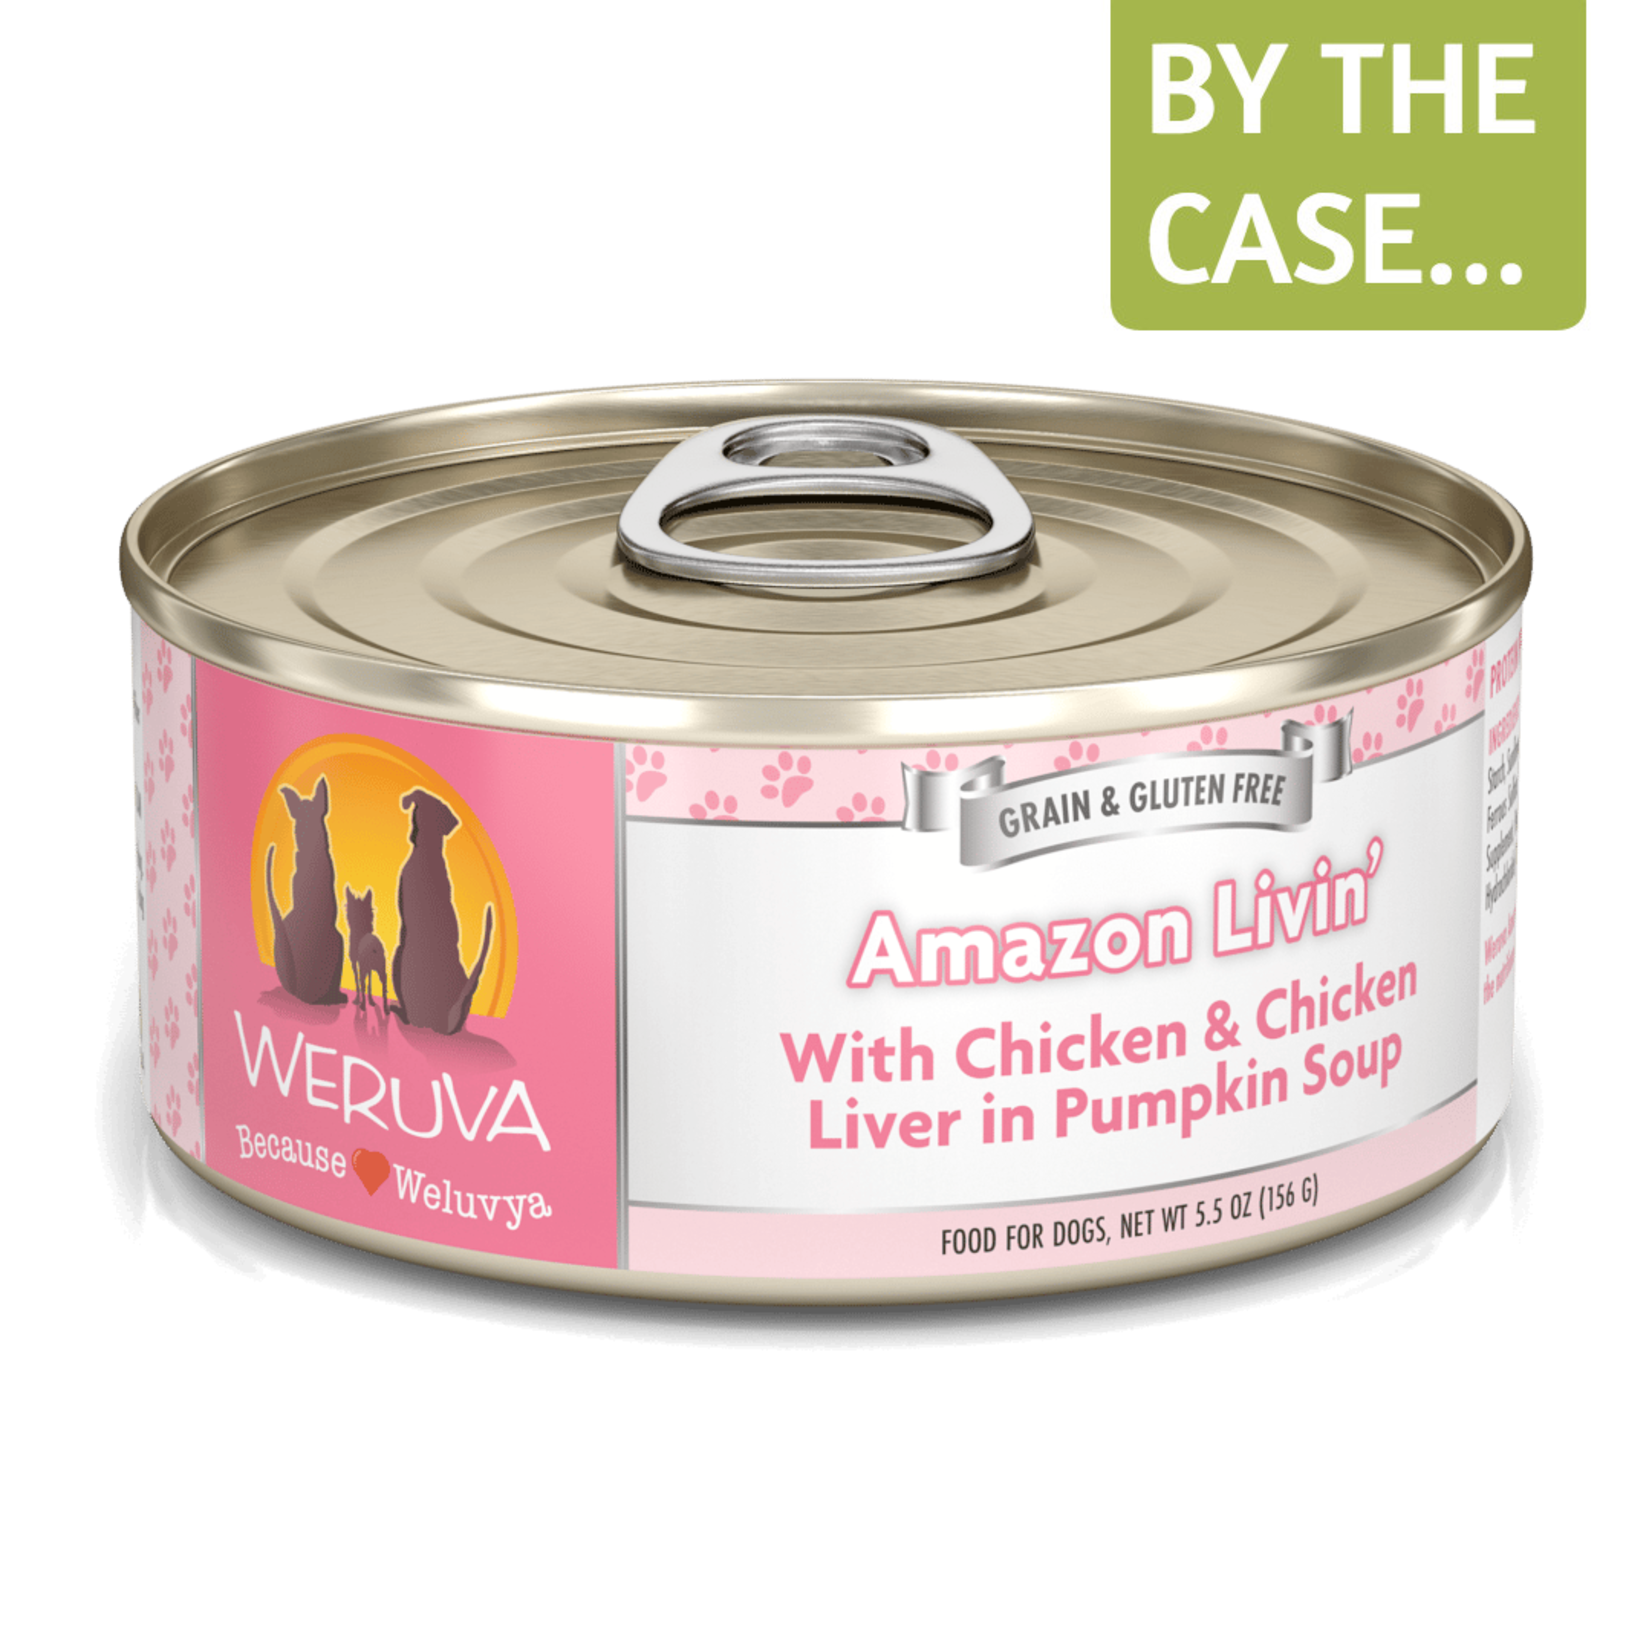 Weruva Weruva Classic Wet Dog Food Amazon Livin' with Chicken & Chicken Liver in Pumpkin Soup 5.5oz Can Grain Free